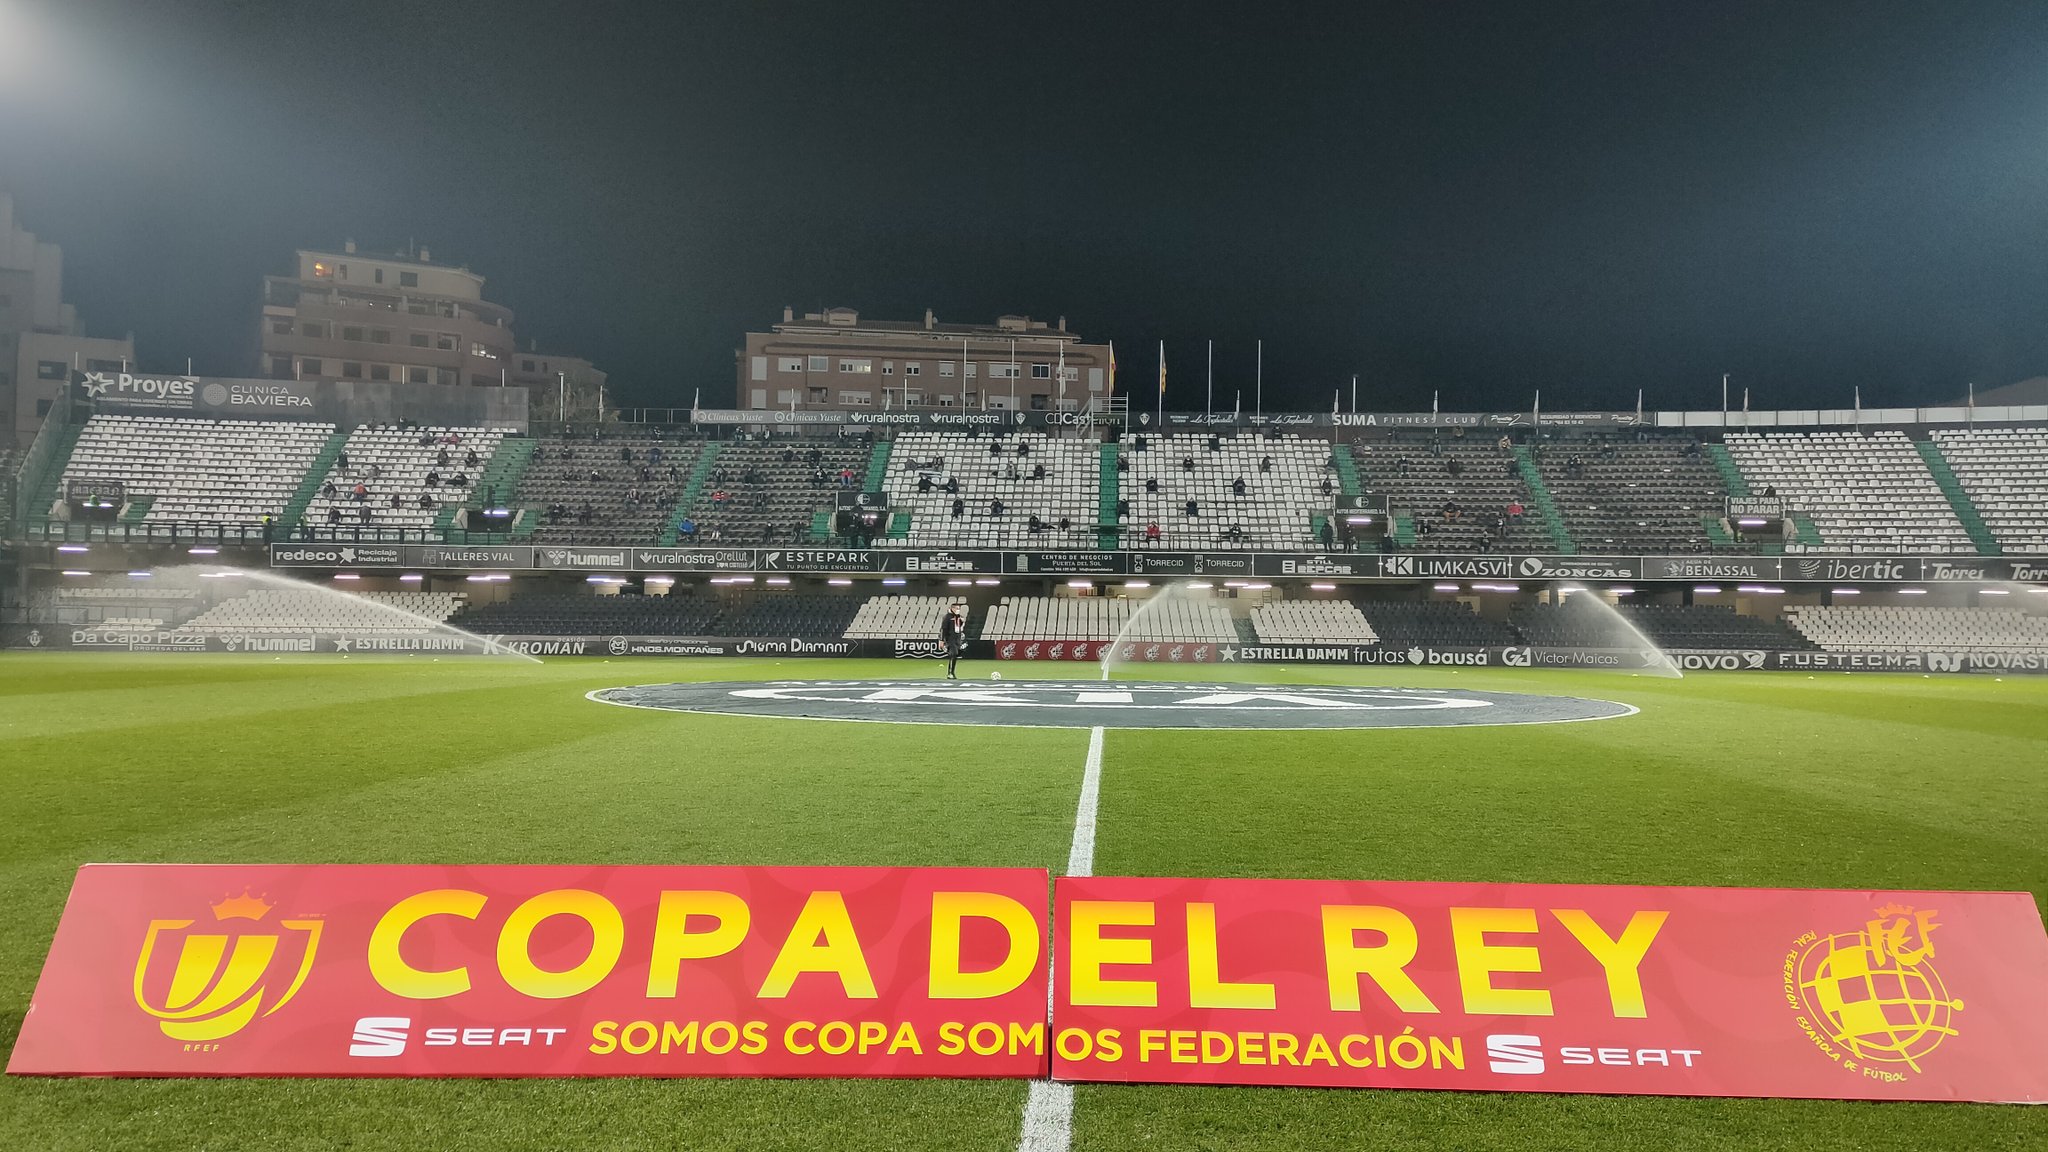 Crónica del CD Castellón 0-2 CD Tenerife (Copa): “REGALO DE REYES”